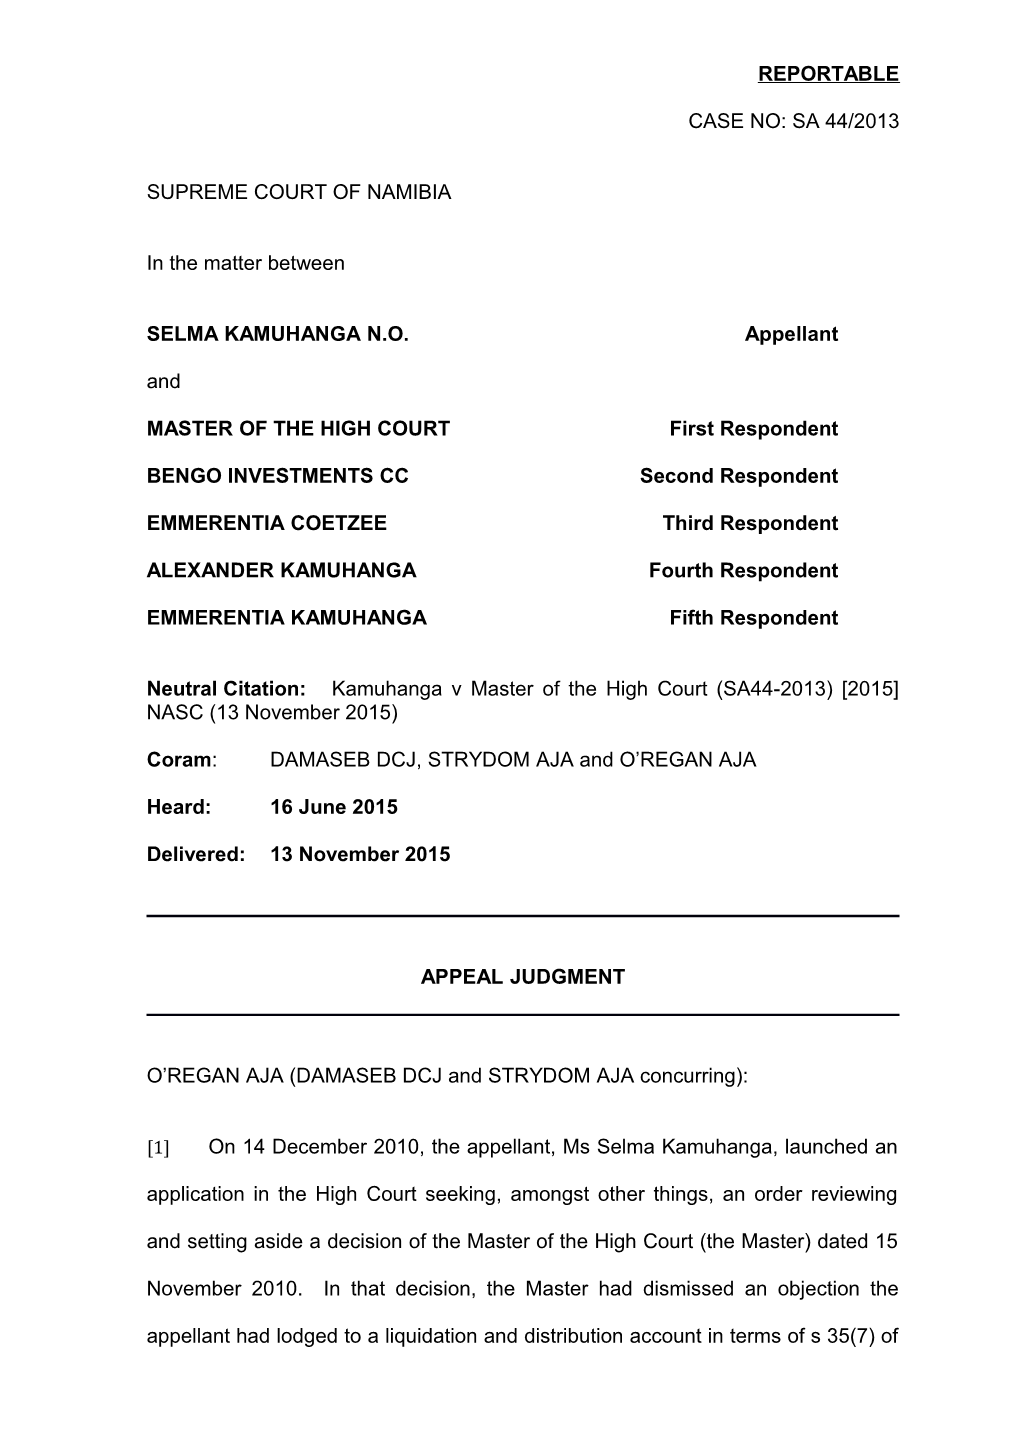 Kamuhanga V Master of the High Court (SA44-2013) 2015 NASC (13 November 2015)